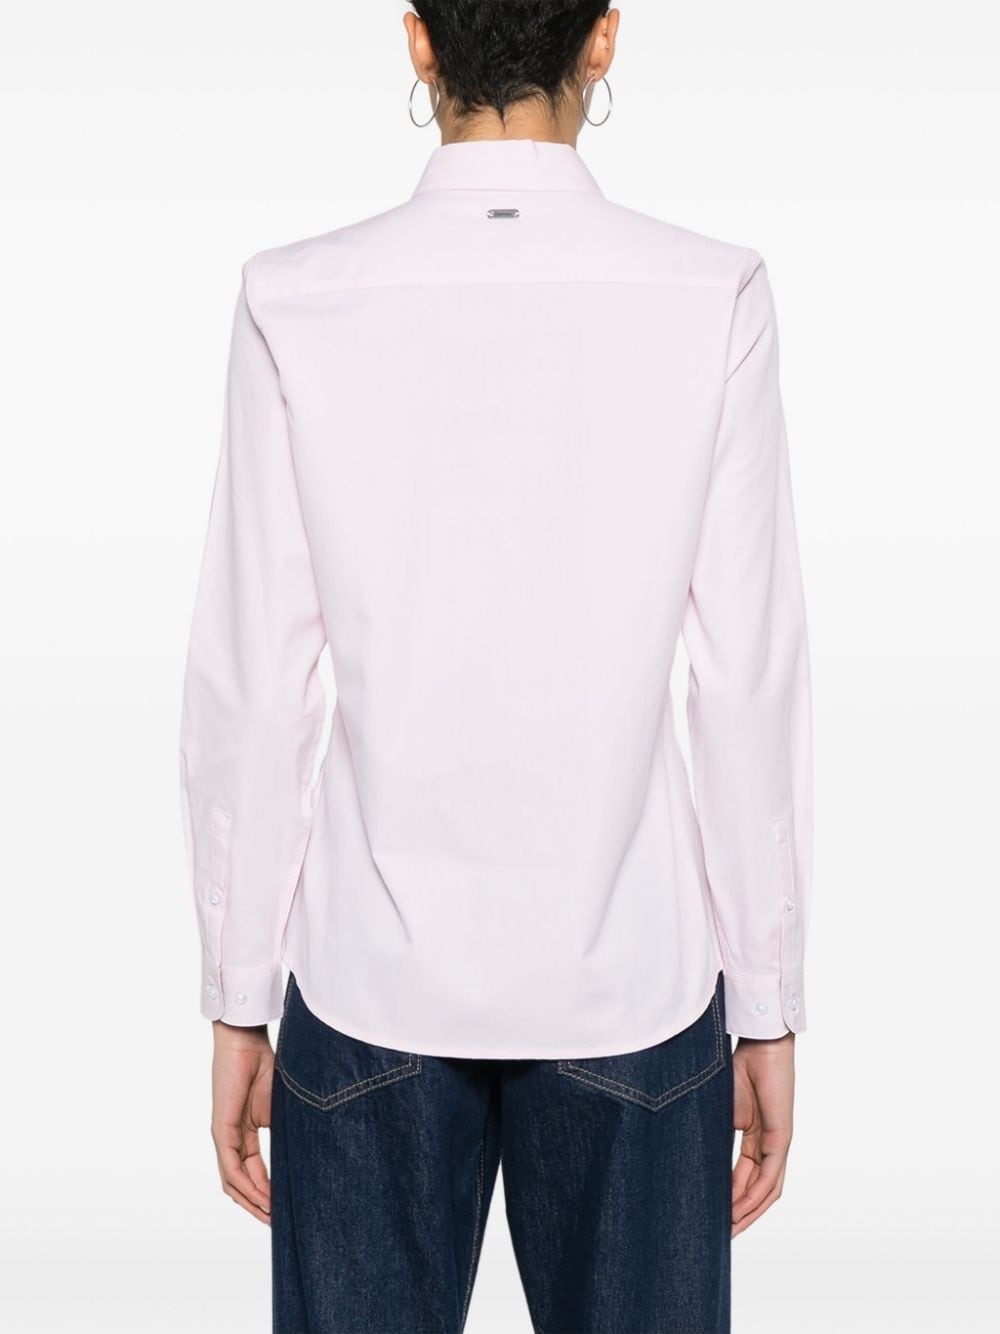 Derwent cotton shirt - 4